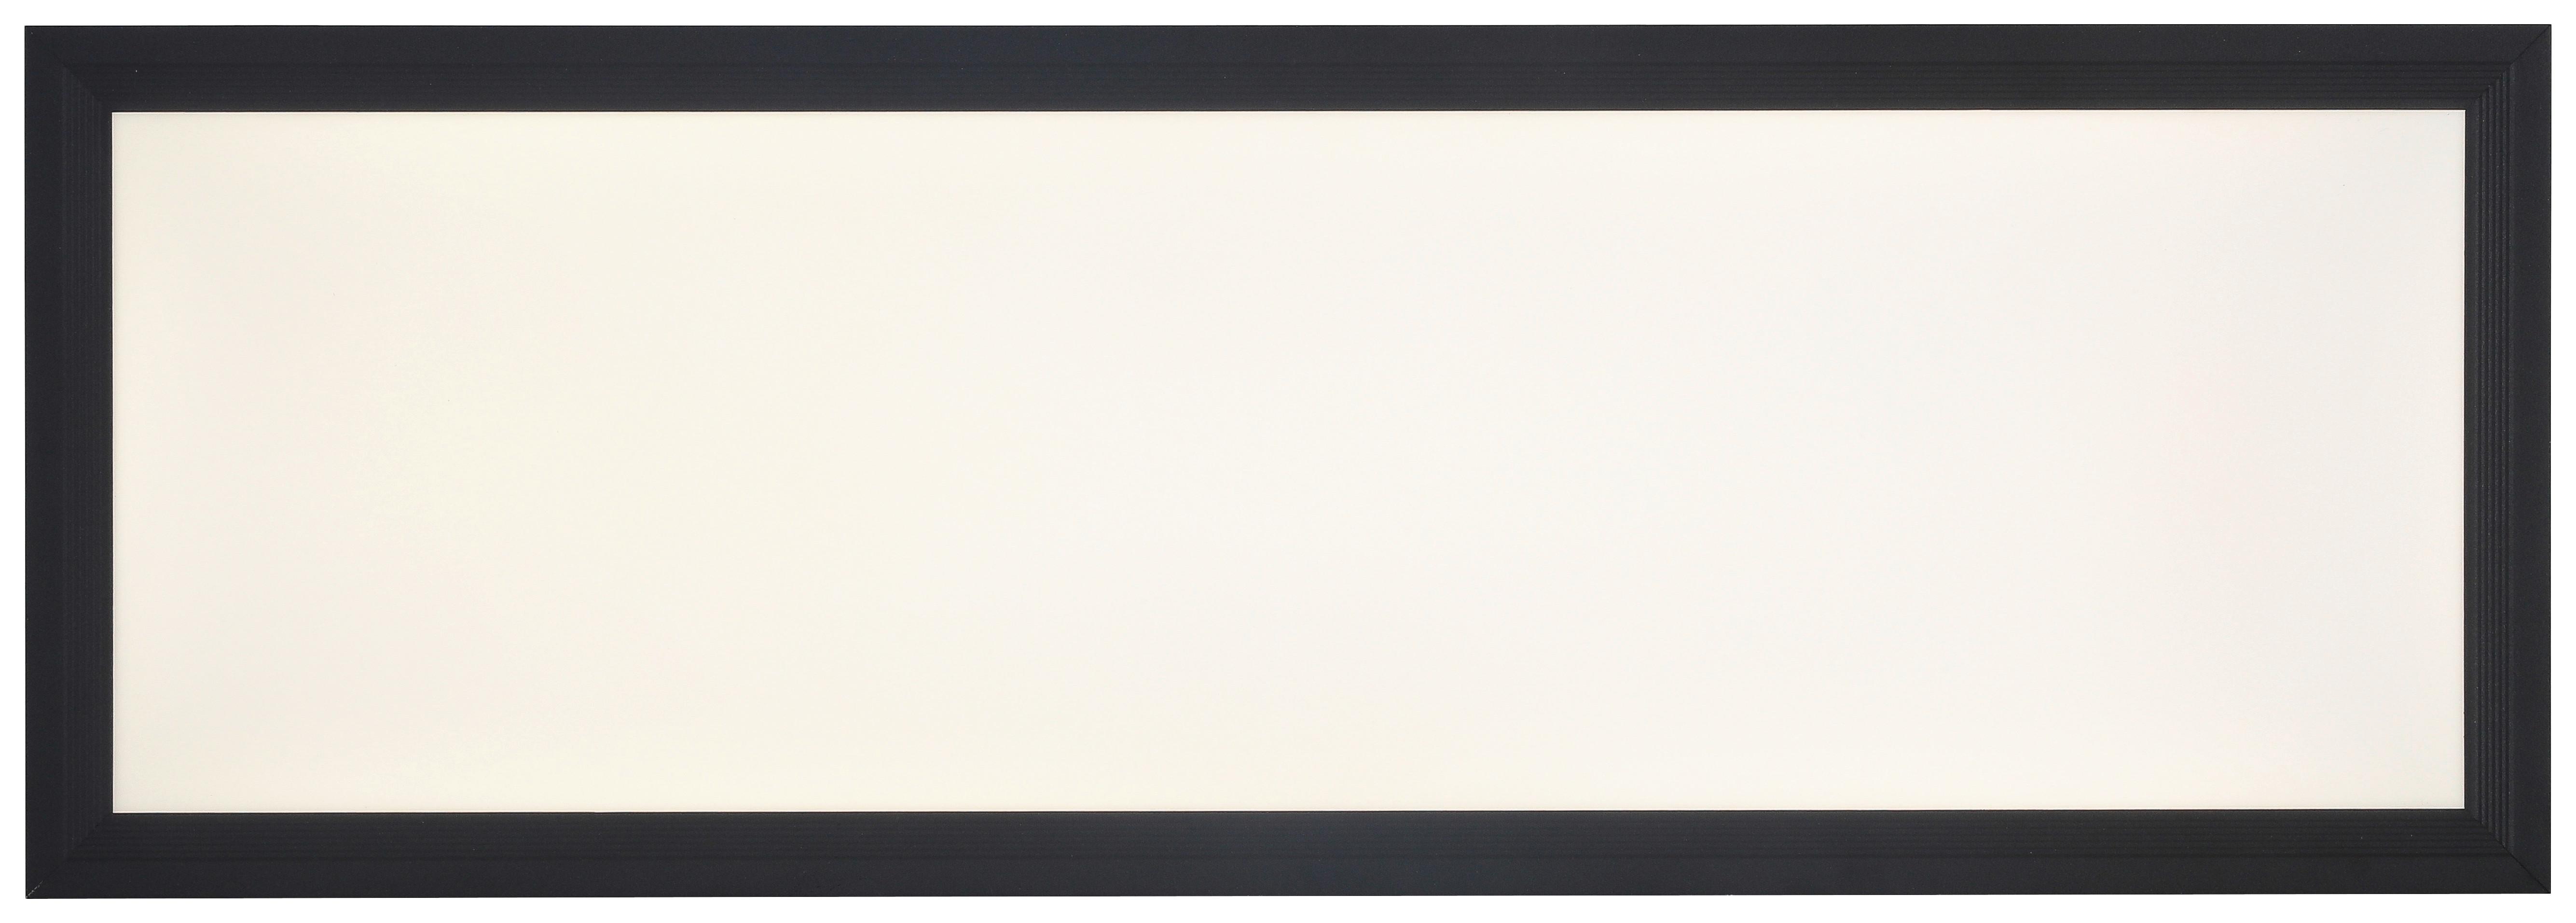 LED-Deckenleuchte Maddison L: 58 cm Rechteckig - Schwarz/Weiß, MODERN, Kunststoff/Metall (58/20/6cm) - Luca Bessoni